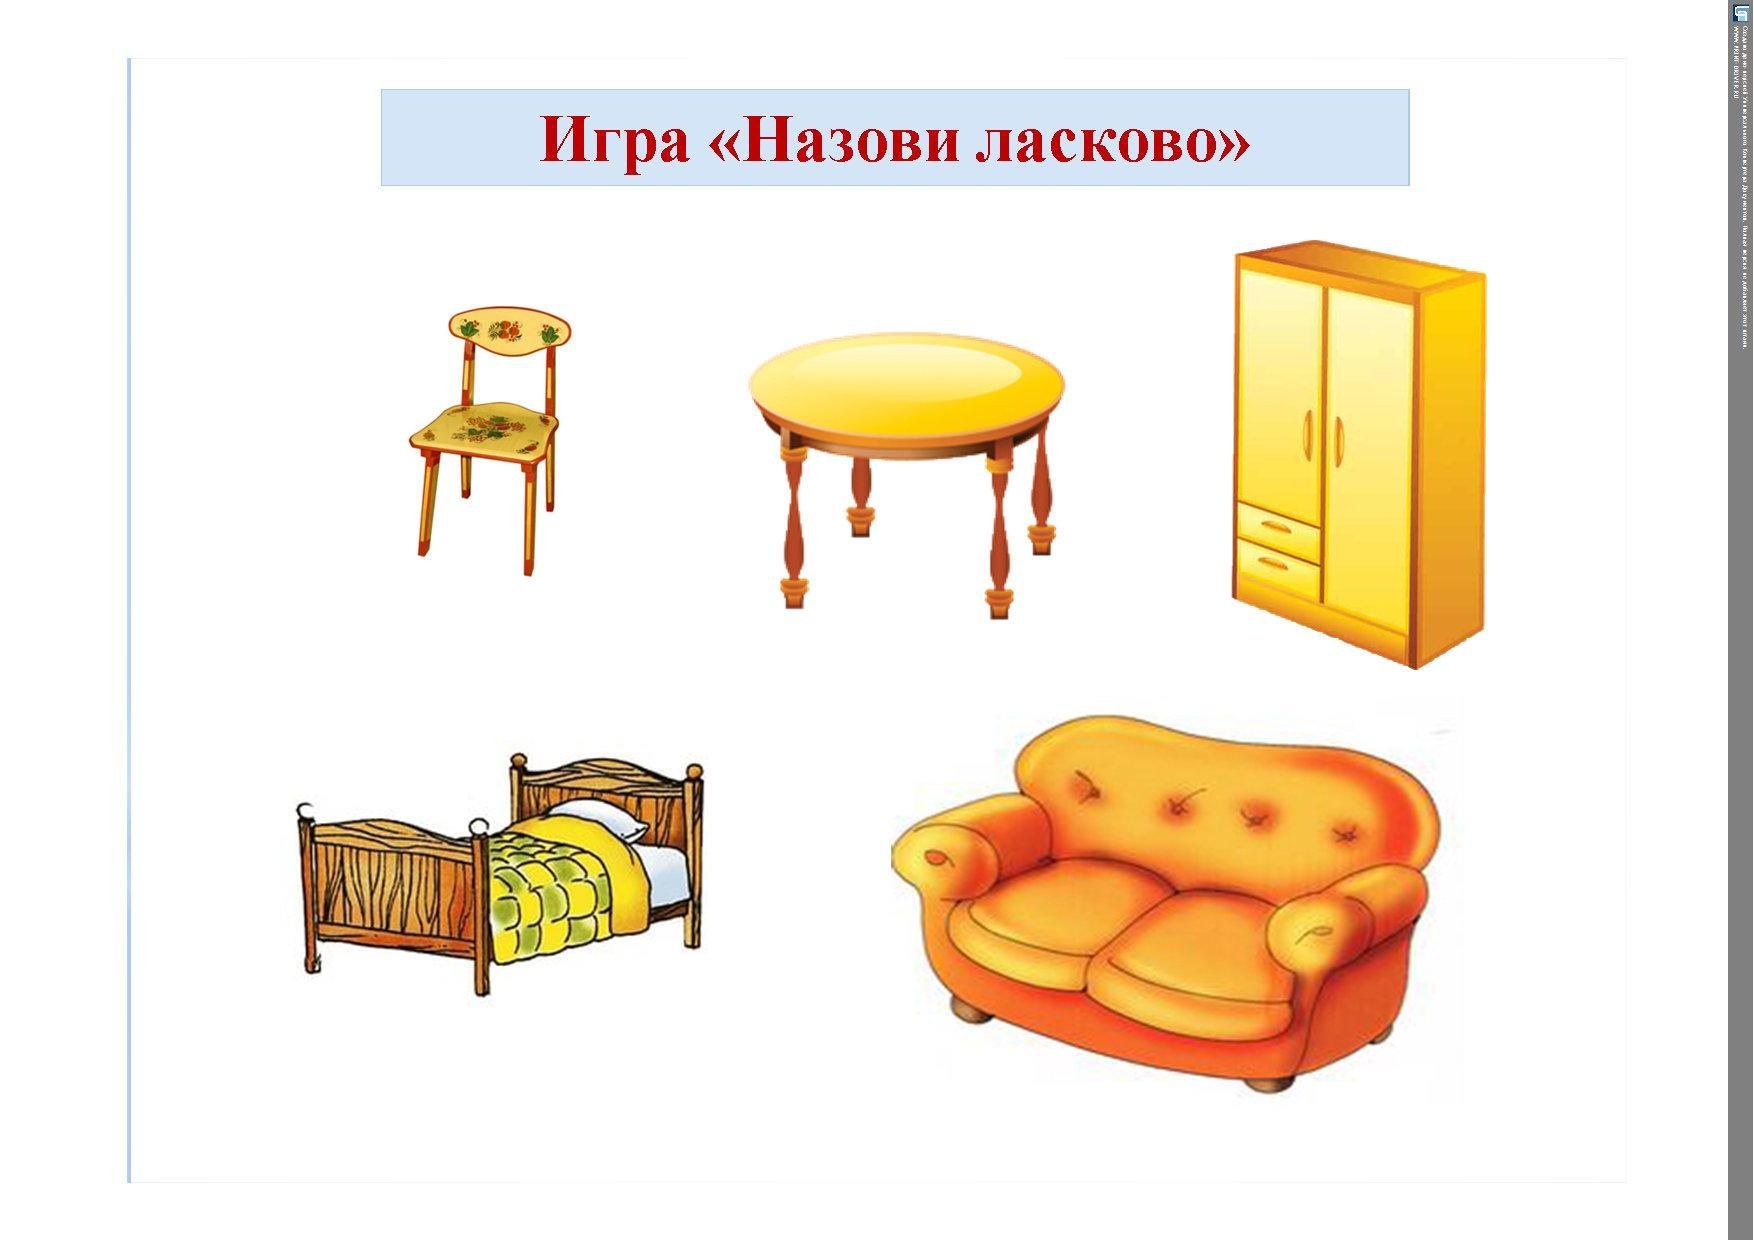 Мебель игра для детей. Мебель для дошкольников. Предметы мебели для детей. Карточки с изображением мебели для детей. Мебель рисунок для детей.